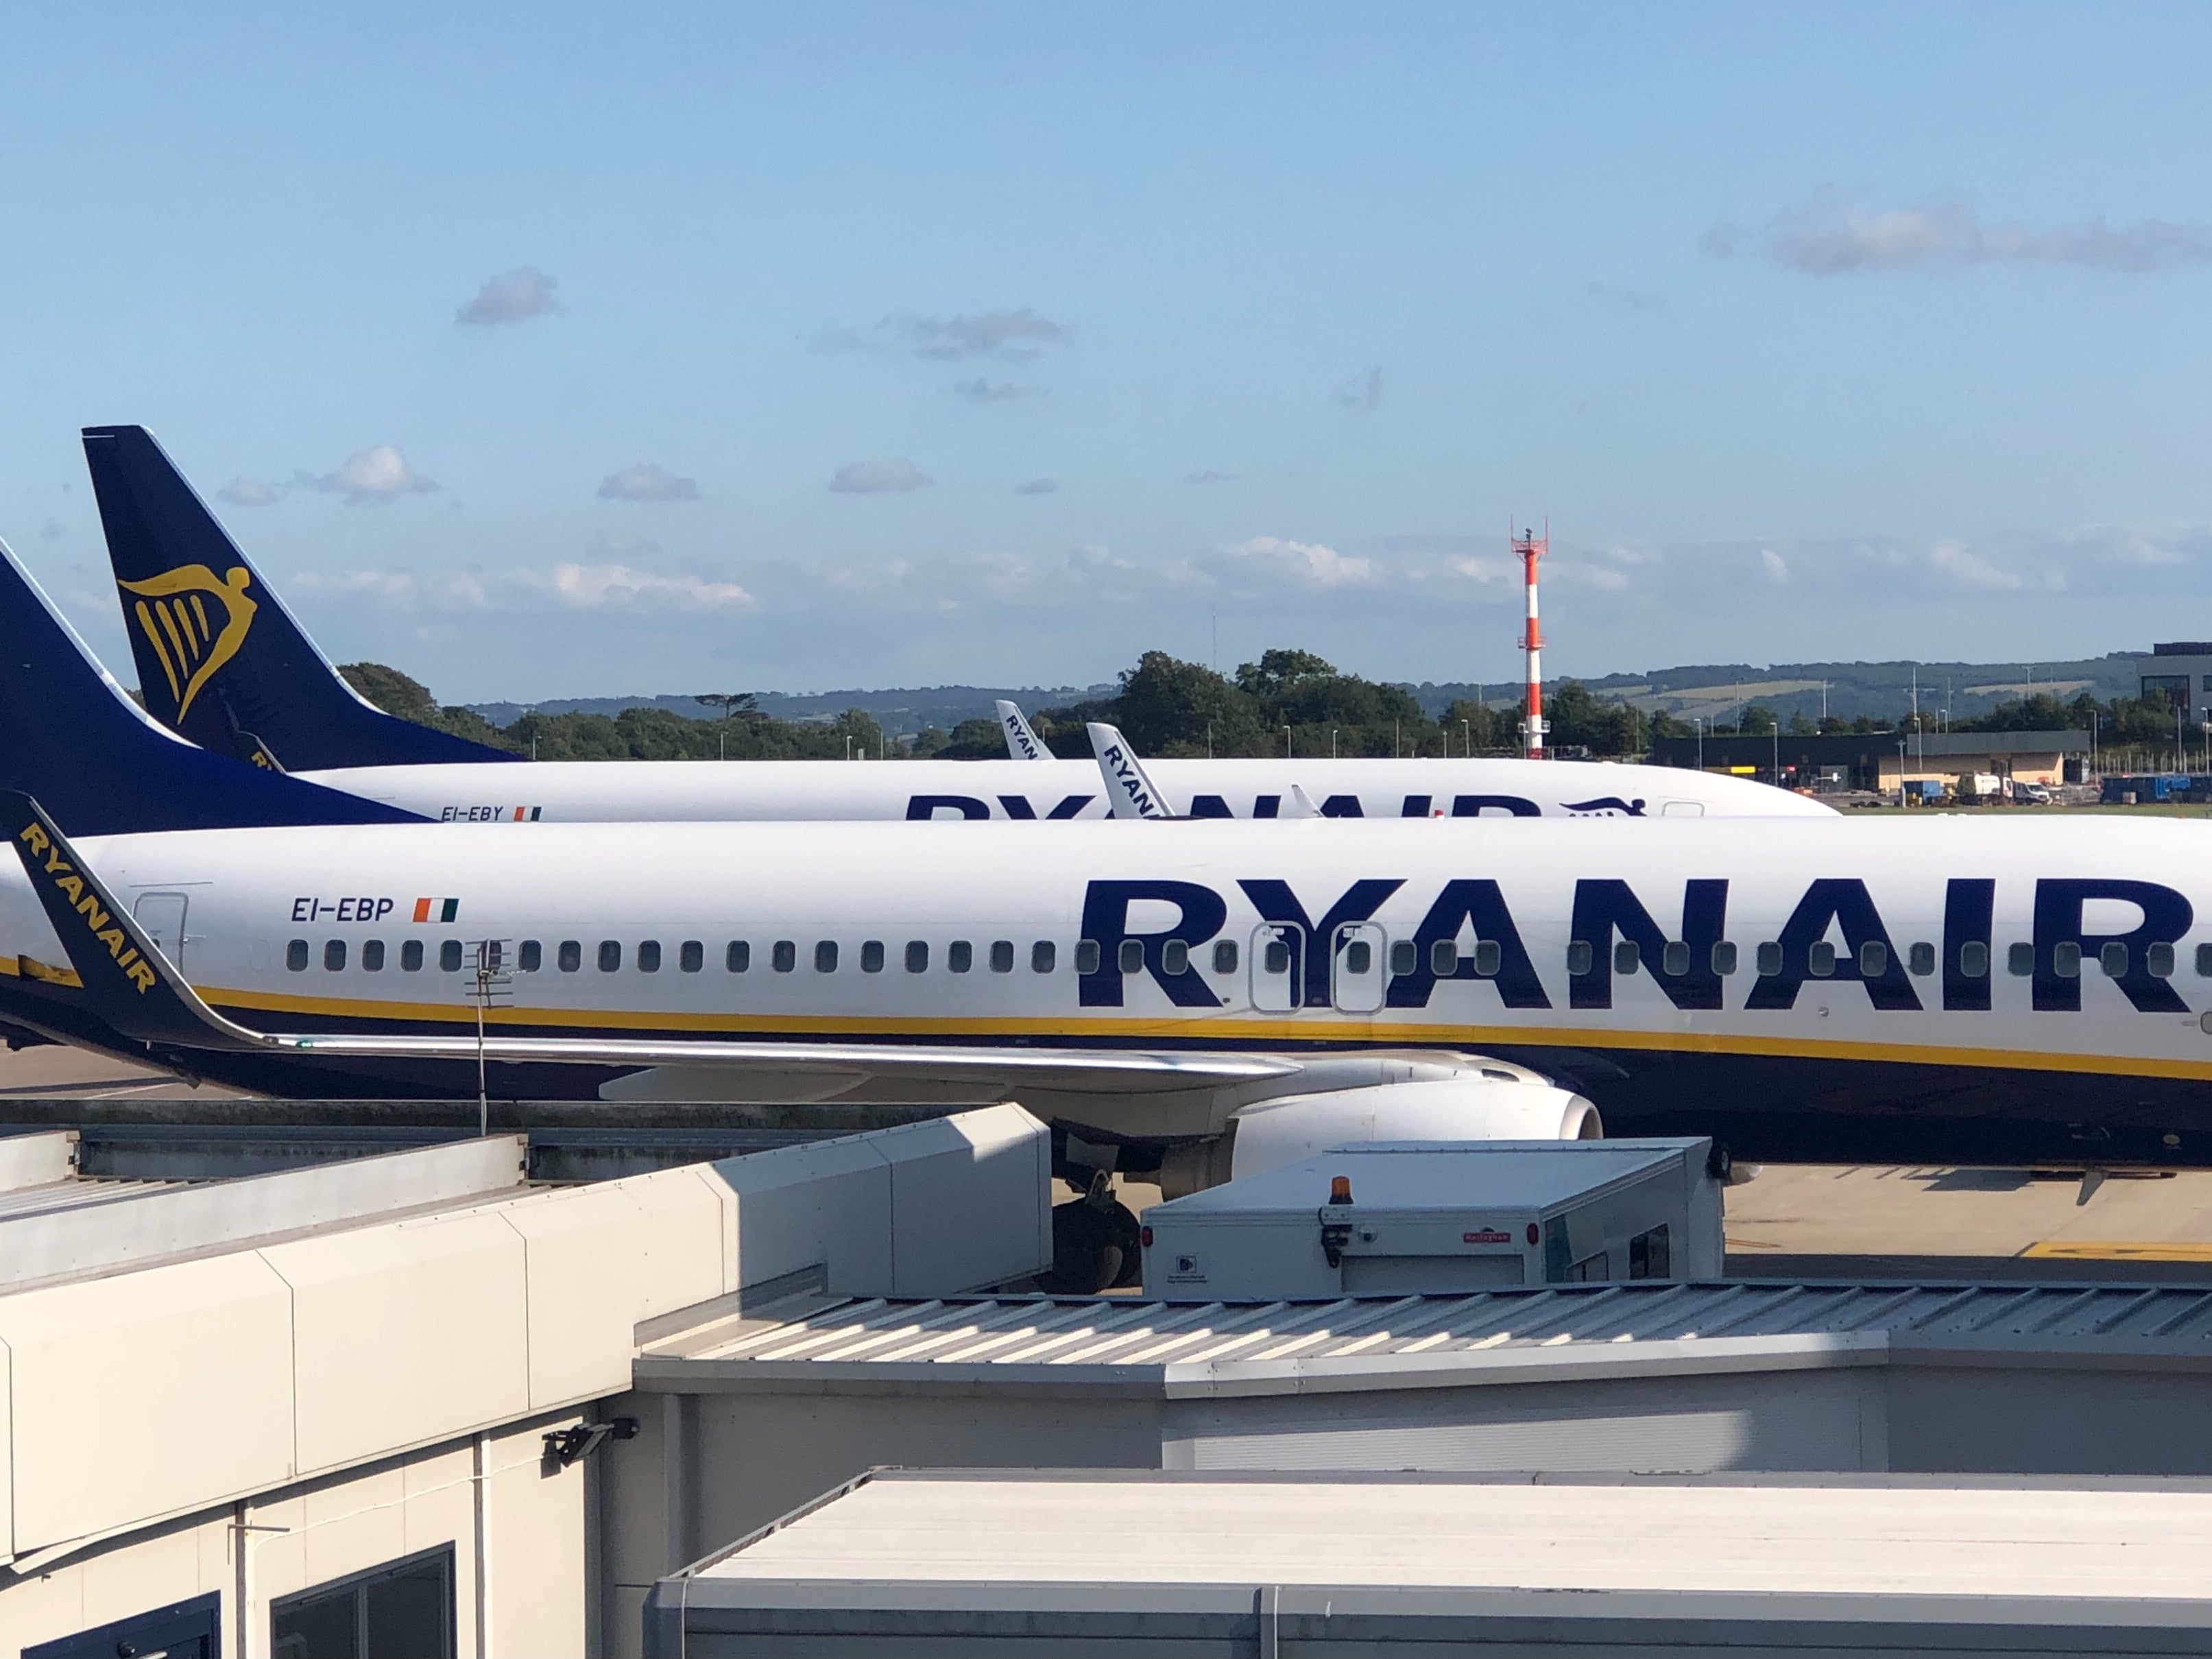 Blue sky thinking? Ryanair aircraft at Bristol airport